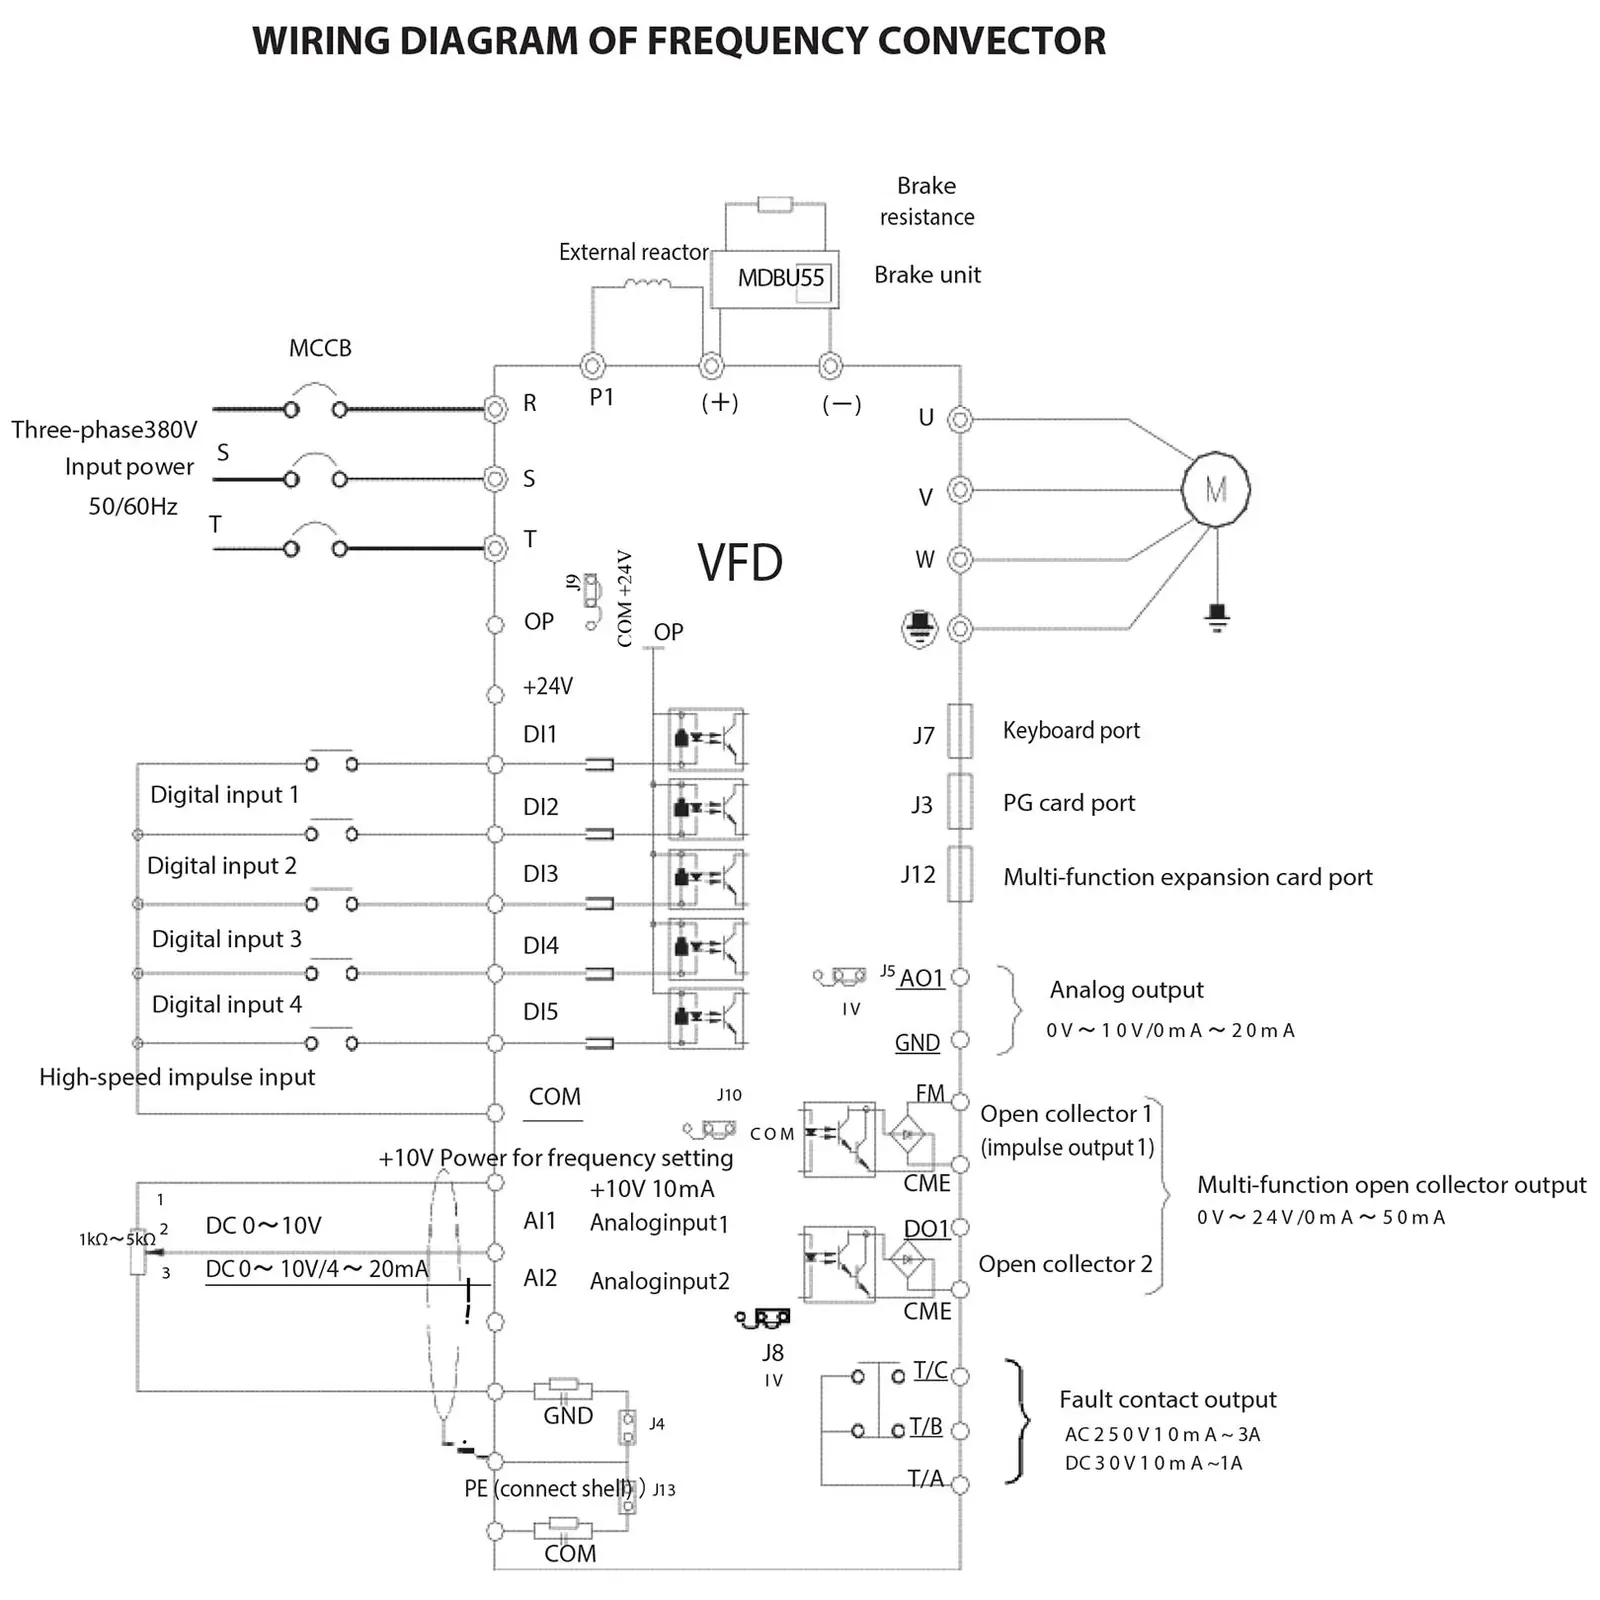 Andrahandssortering Frekvensomriktare - 0,75 kW / 1 hk - 380 V - 50-60 Hz - LED